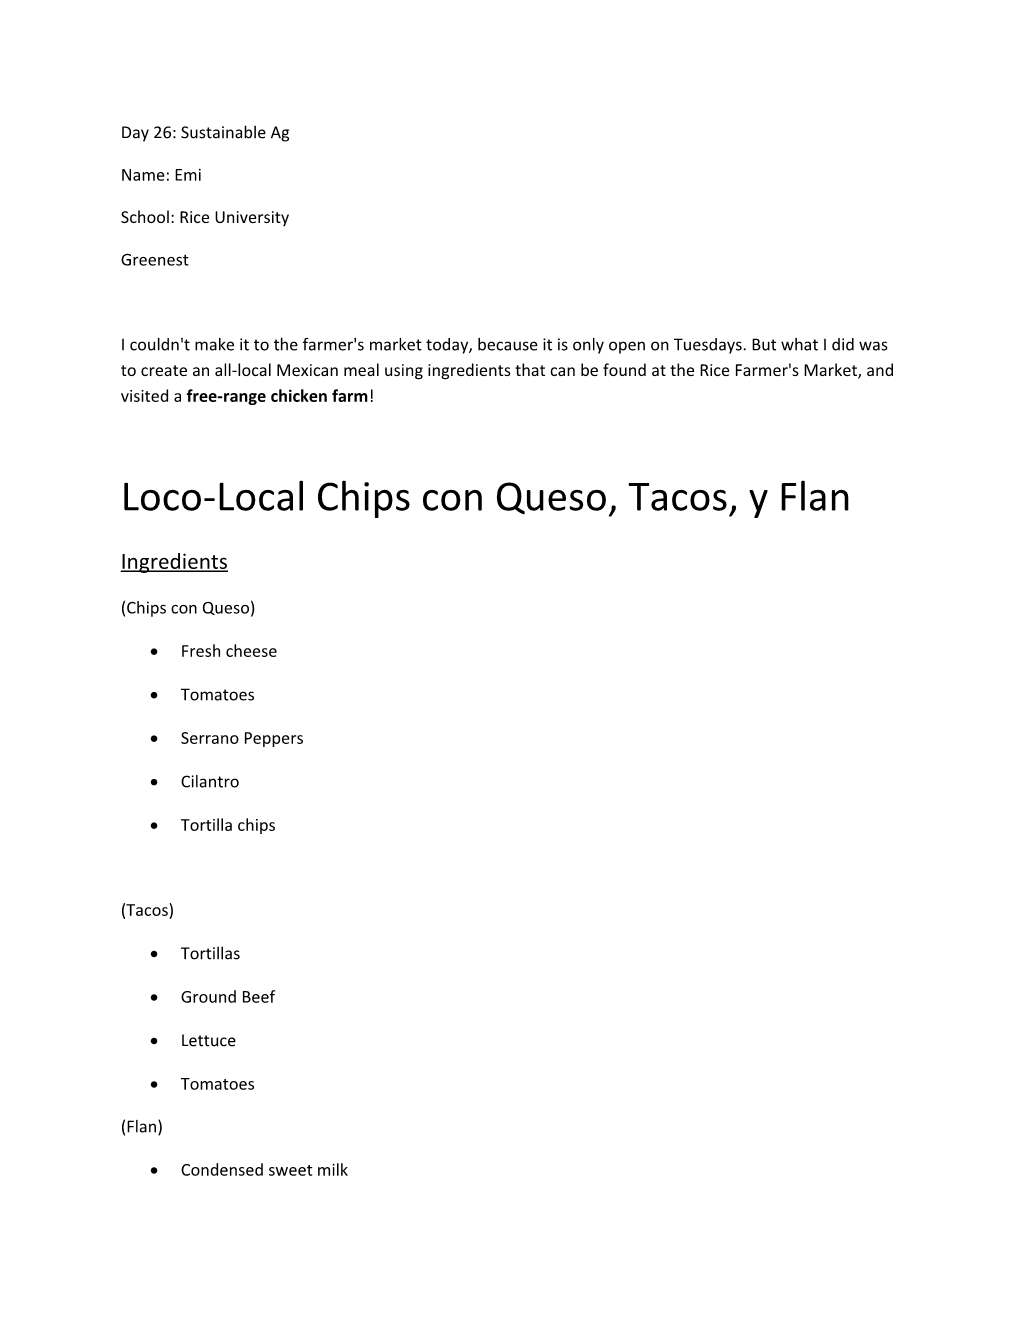 Loco-Local Chips Con Queso, Tacos, Y Flan